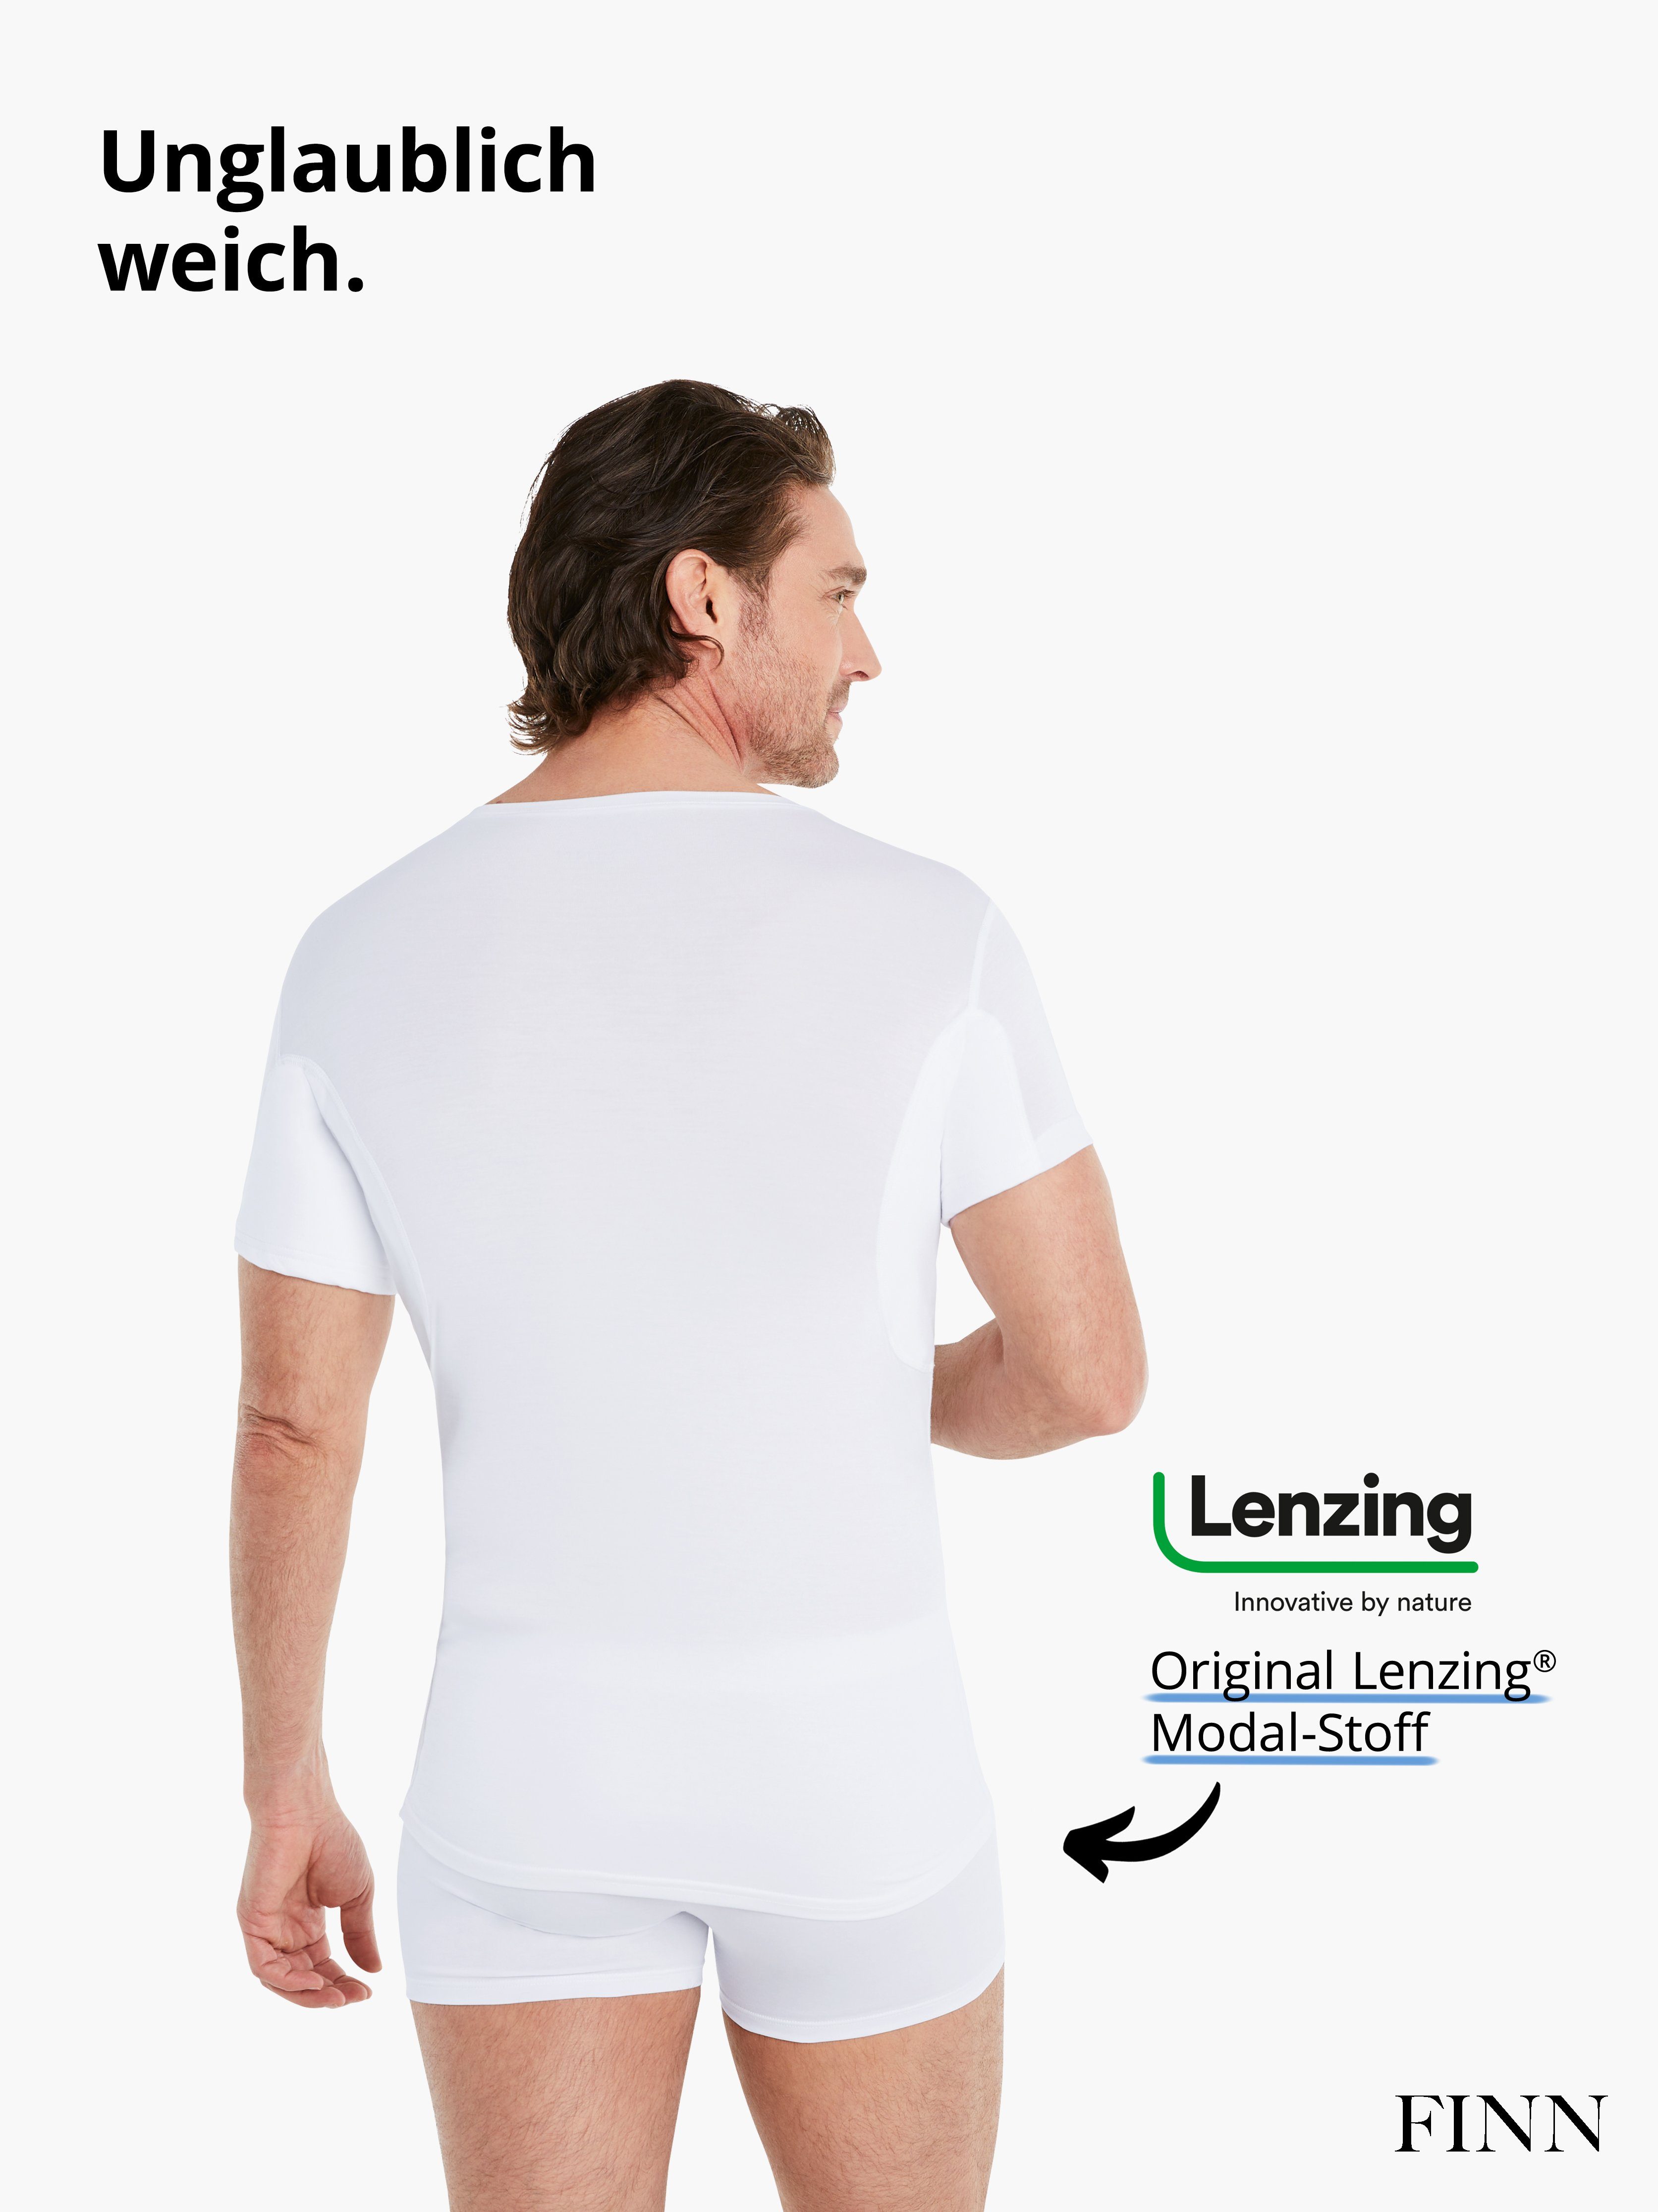 Schutz mit Wirkung vor Unterhemd Schweißflecken, garantierte Unterhemd Anti-Schweiß 100% Design FINN Rundhals Herren